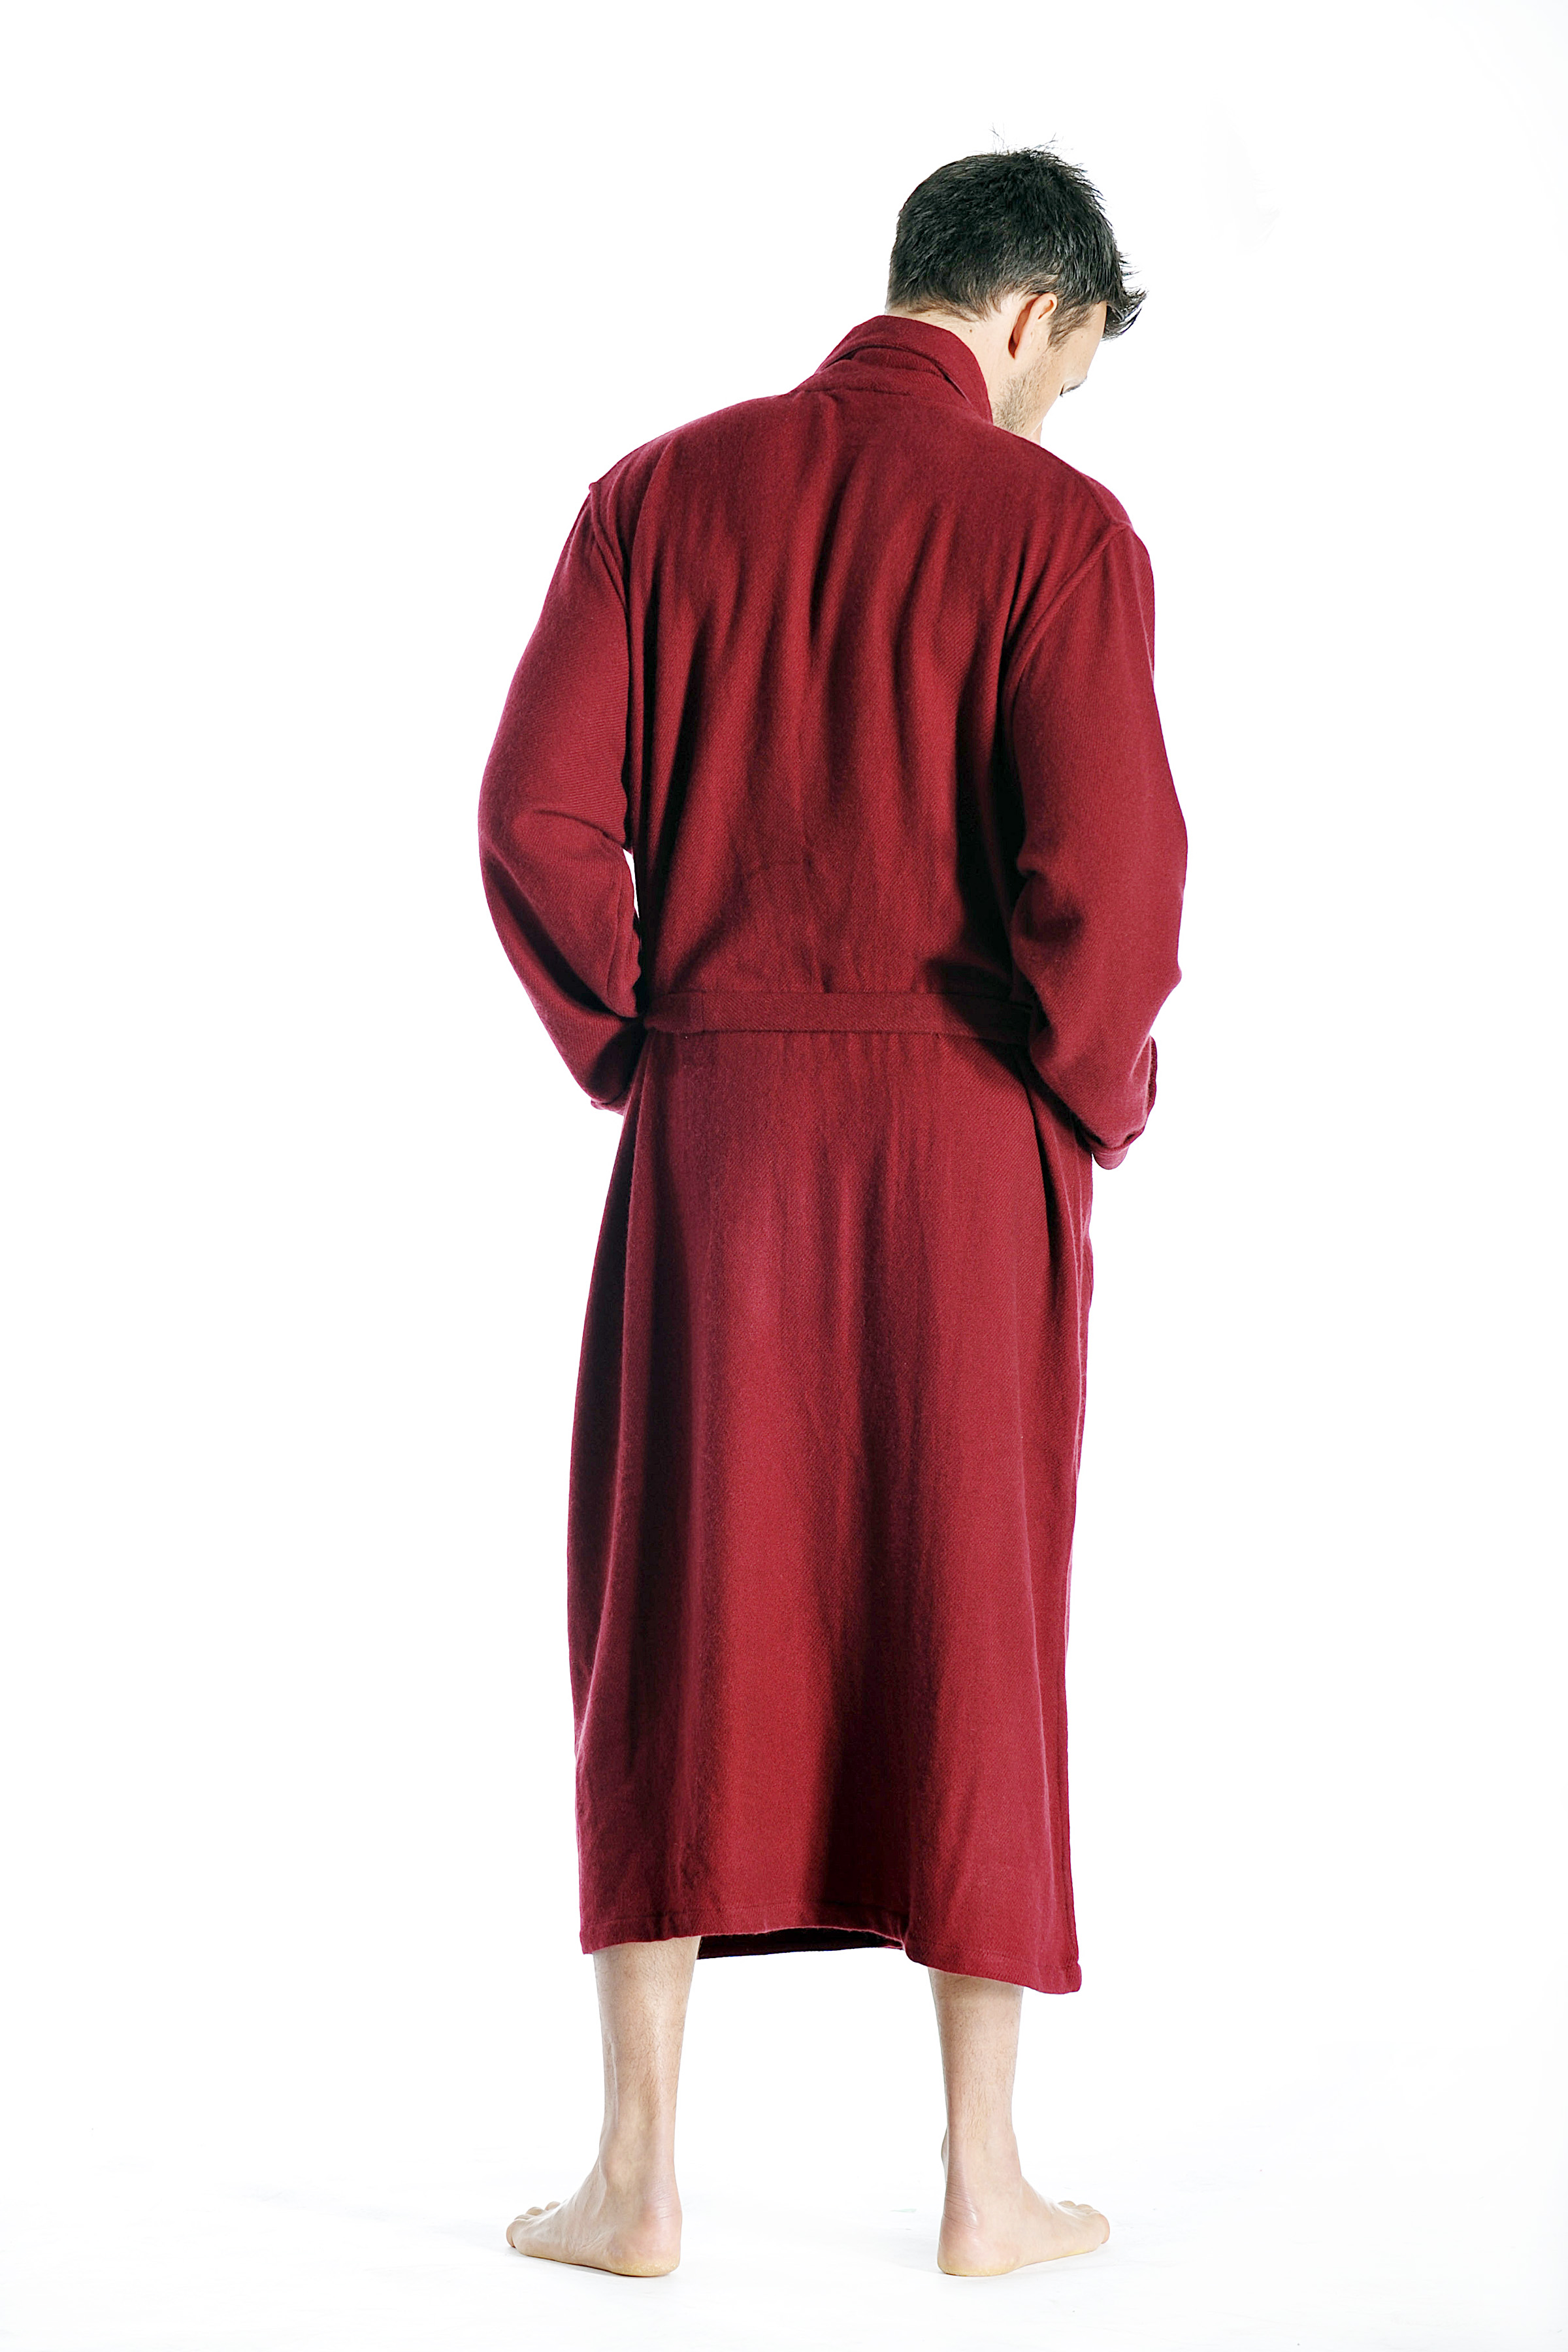 Pure Cashmere Full Length Robe for Men (Burgundy, Small/Medium)